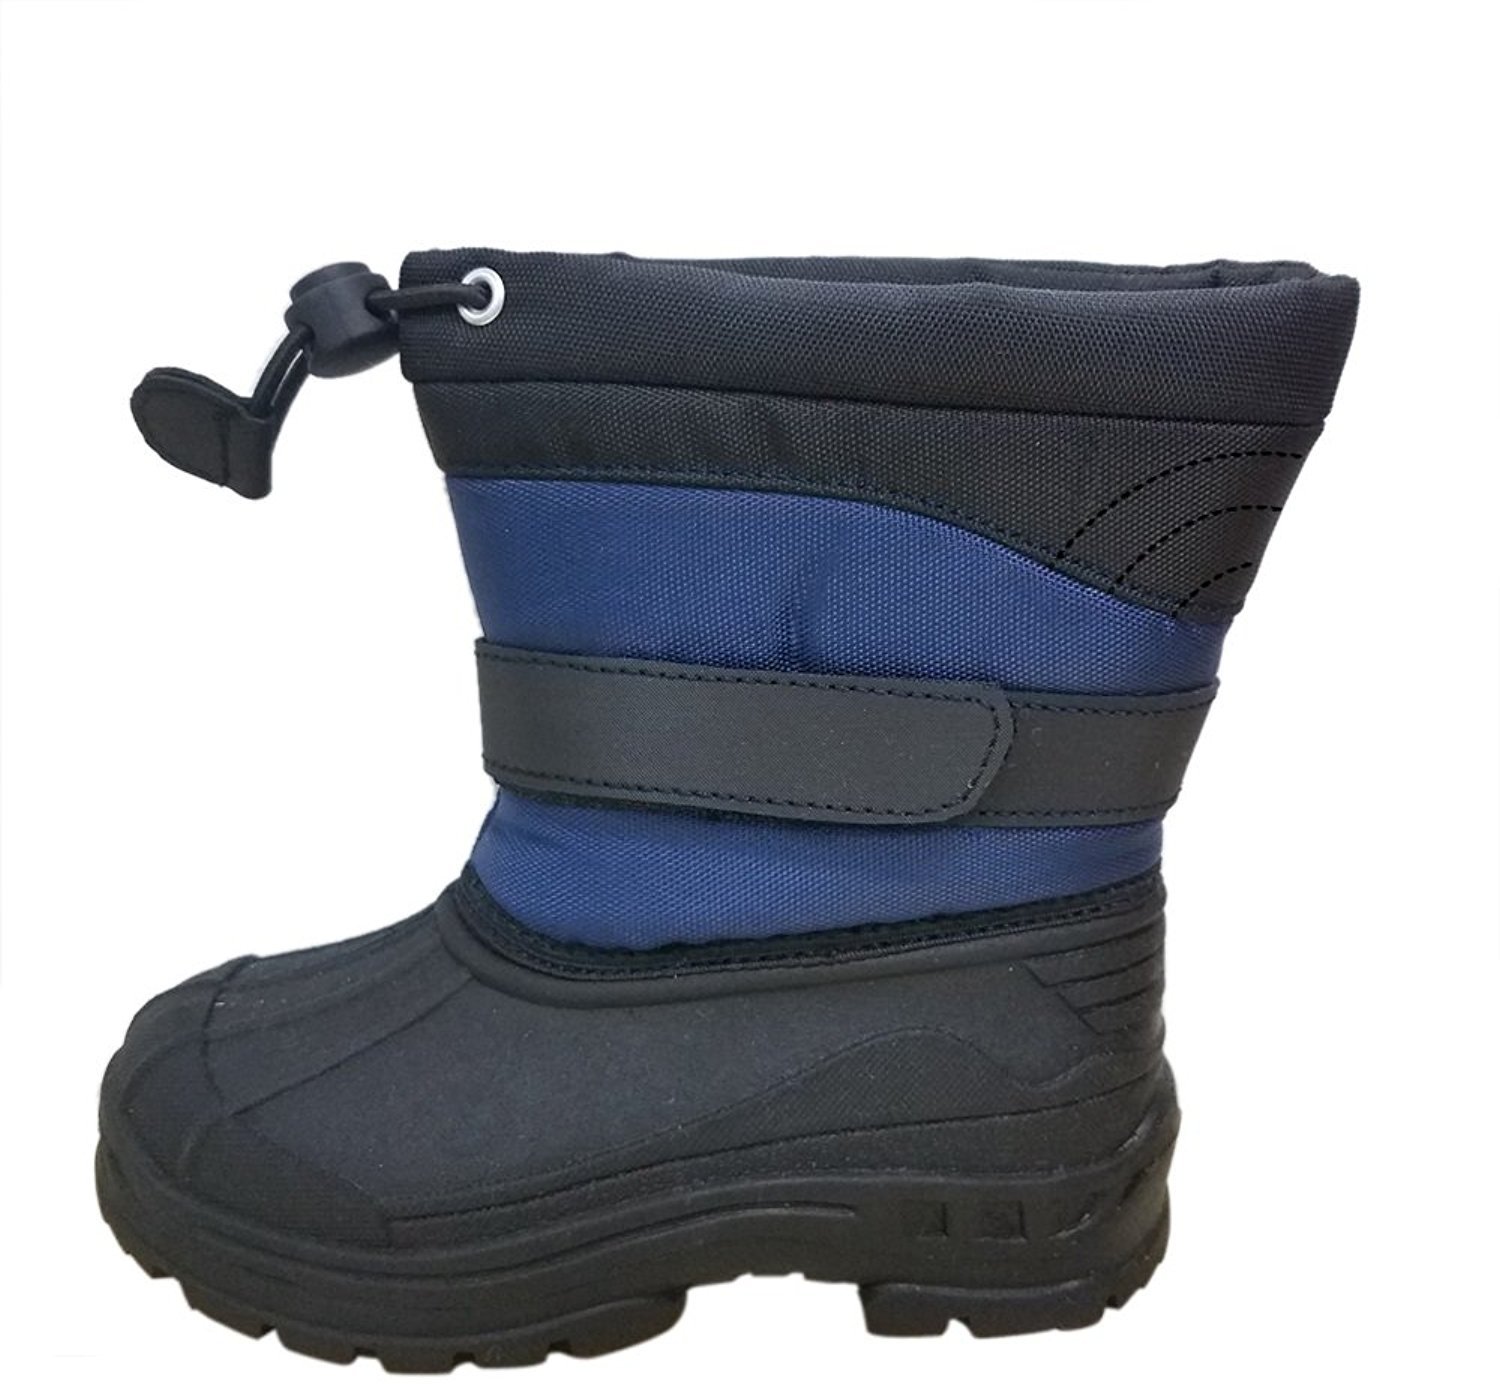 Snowkicks Snow Boots Cold Weather Kids Unisex Toddler-Big Kid | eBay